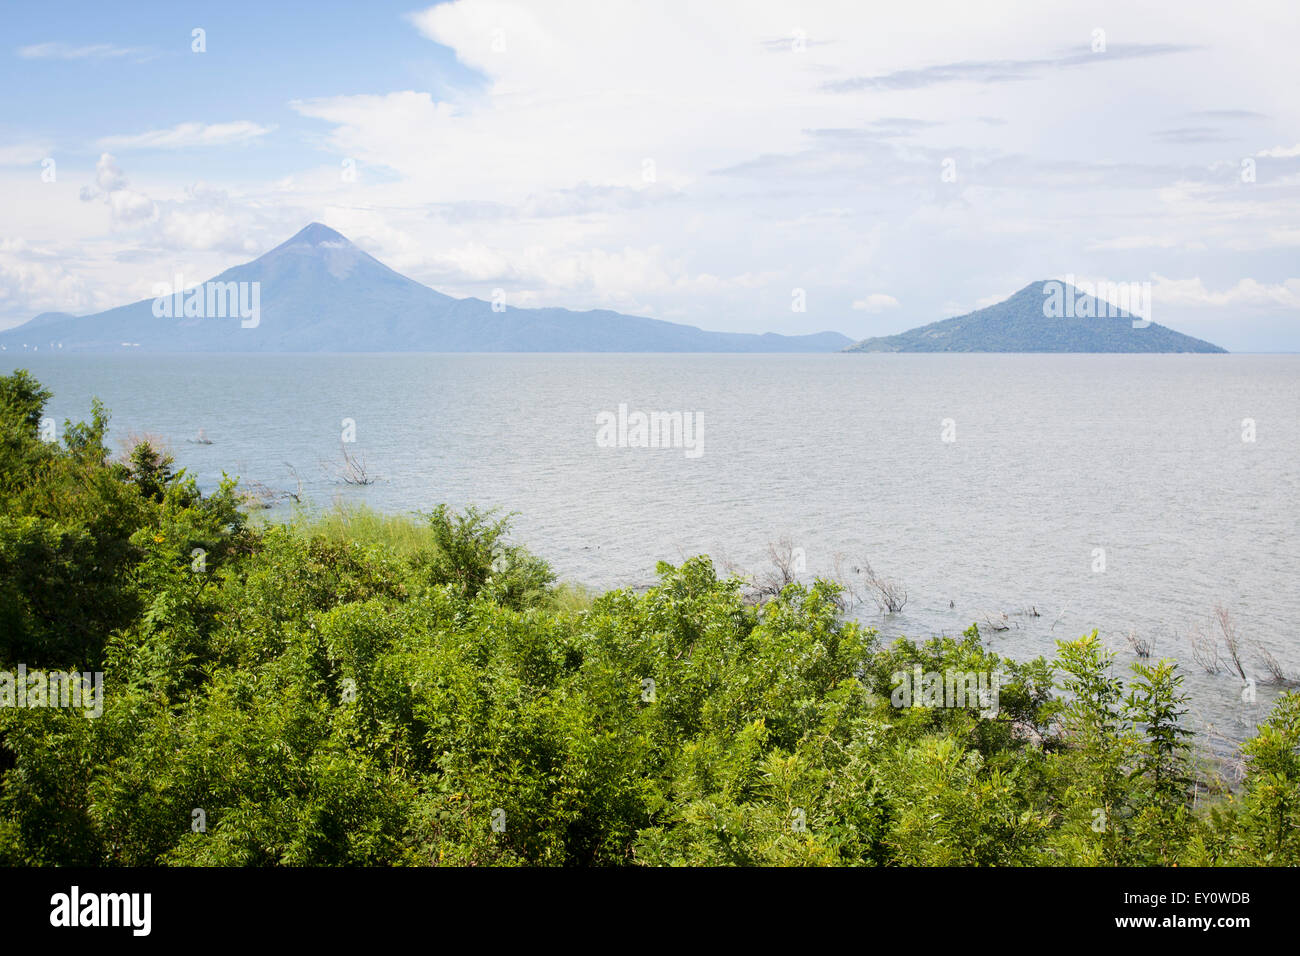 Momotombo and Momotombito volcanoes on the Managua lake, Nicaragua Stock Photo